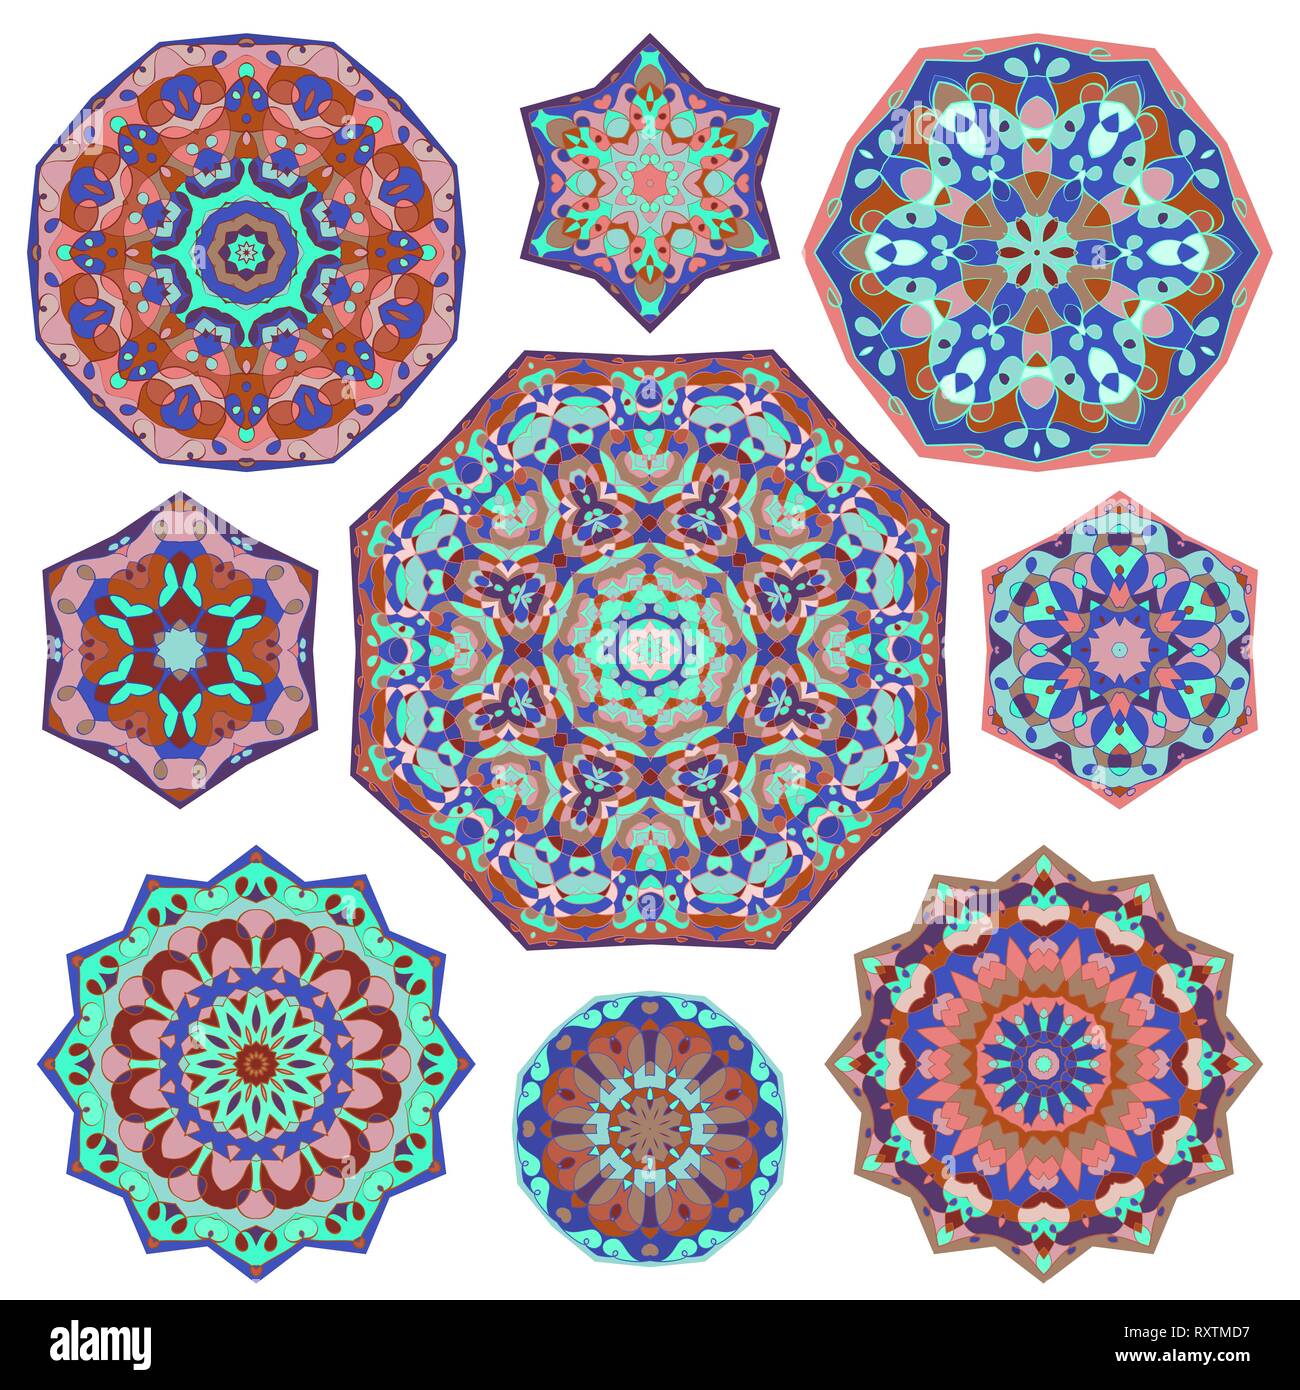 Satz von neun abstrakte kreisförmige Elemente. Runde bunte Mandalas. Grafische Vorlage für Ihr Design. Vector Illustration. Stock Vektor